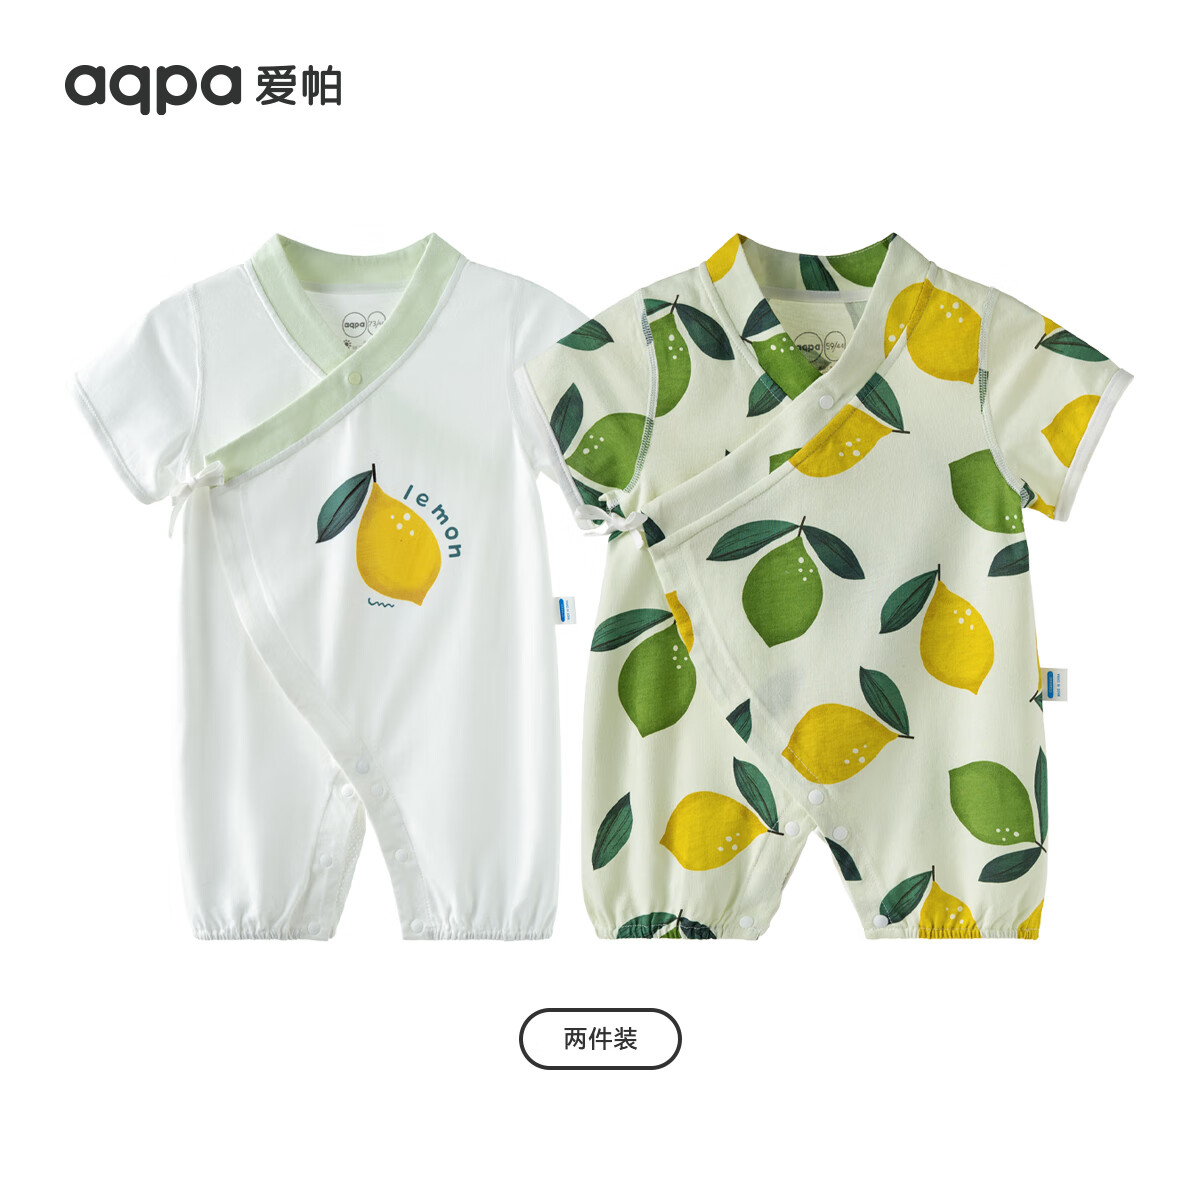 aqpa 婴儿夏季连体衣 2件装 三色可选 65.51元包邮（合32.75元/件）